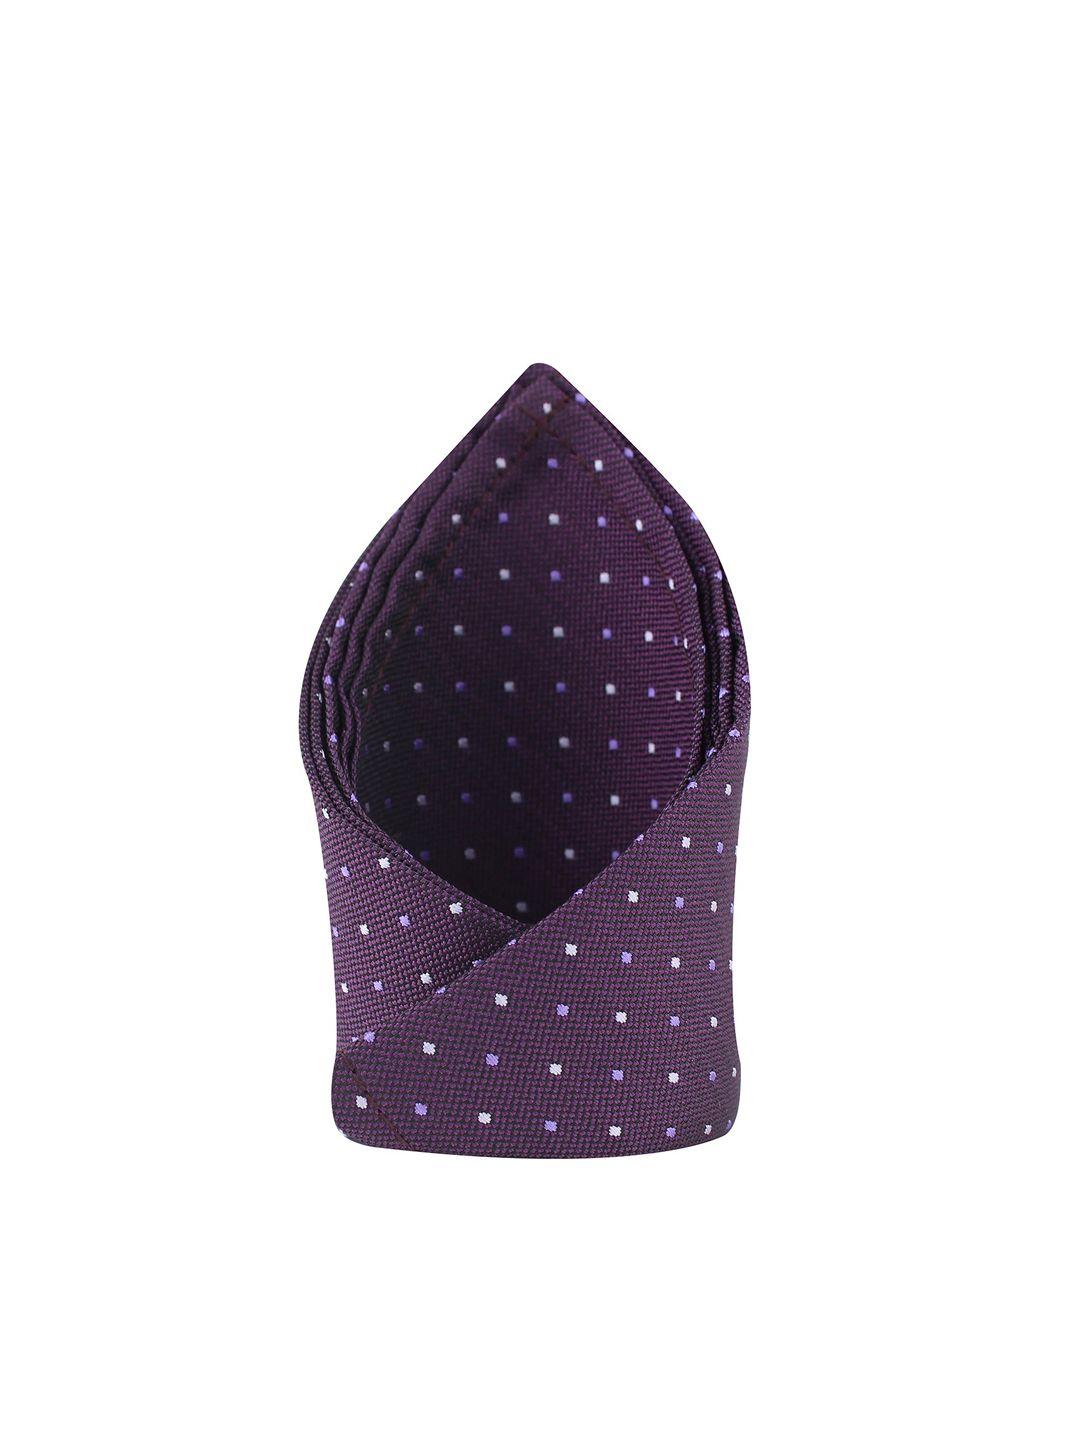 kovove men purple polka dot printed pocket square